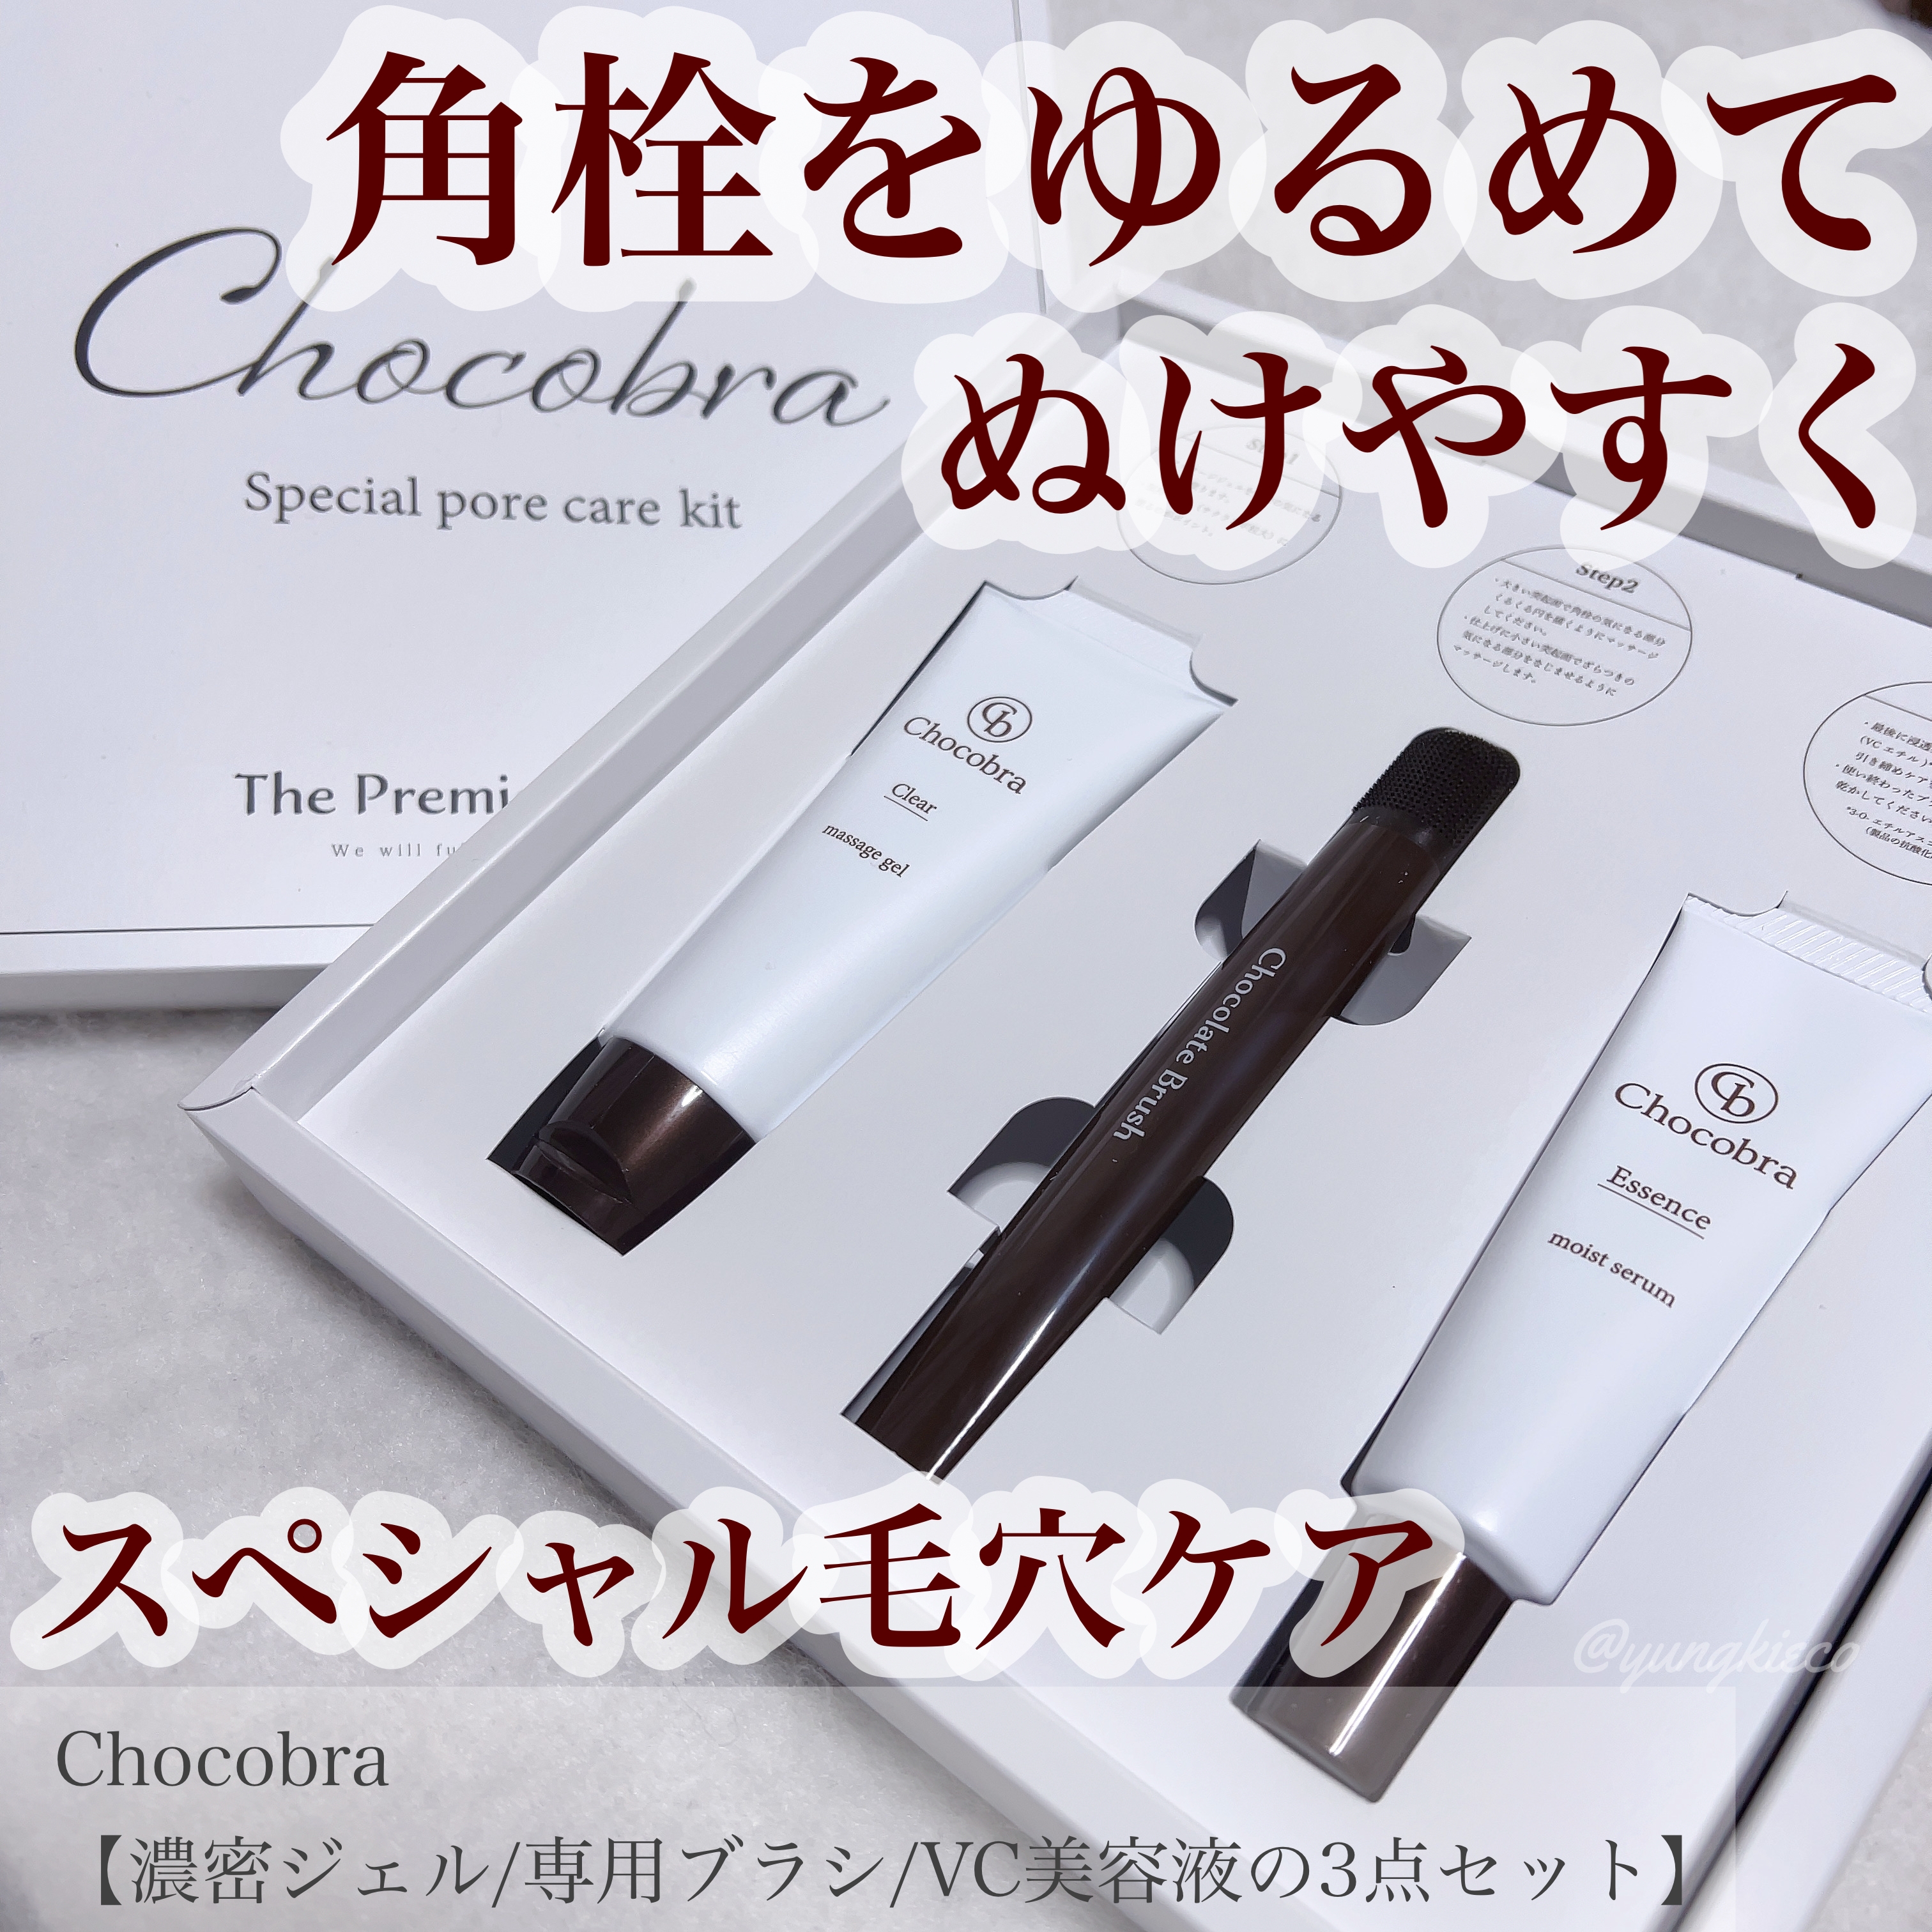 Chocobra(チョコブラ) スペシャル毛穴ケアセットの良い点・メリットに関するyungさんの口コミ画像1